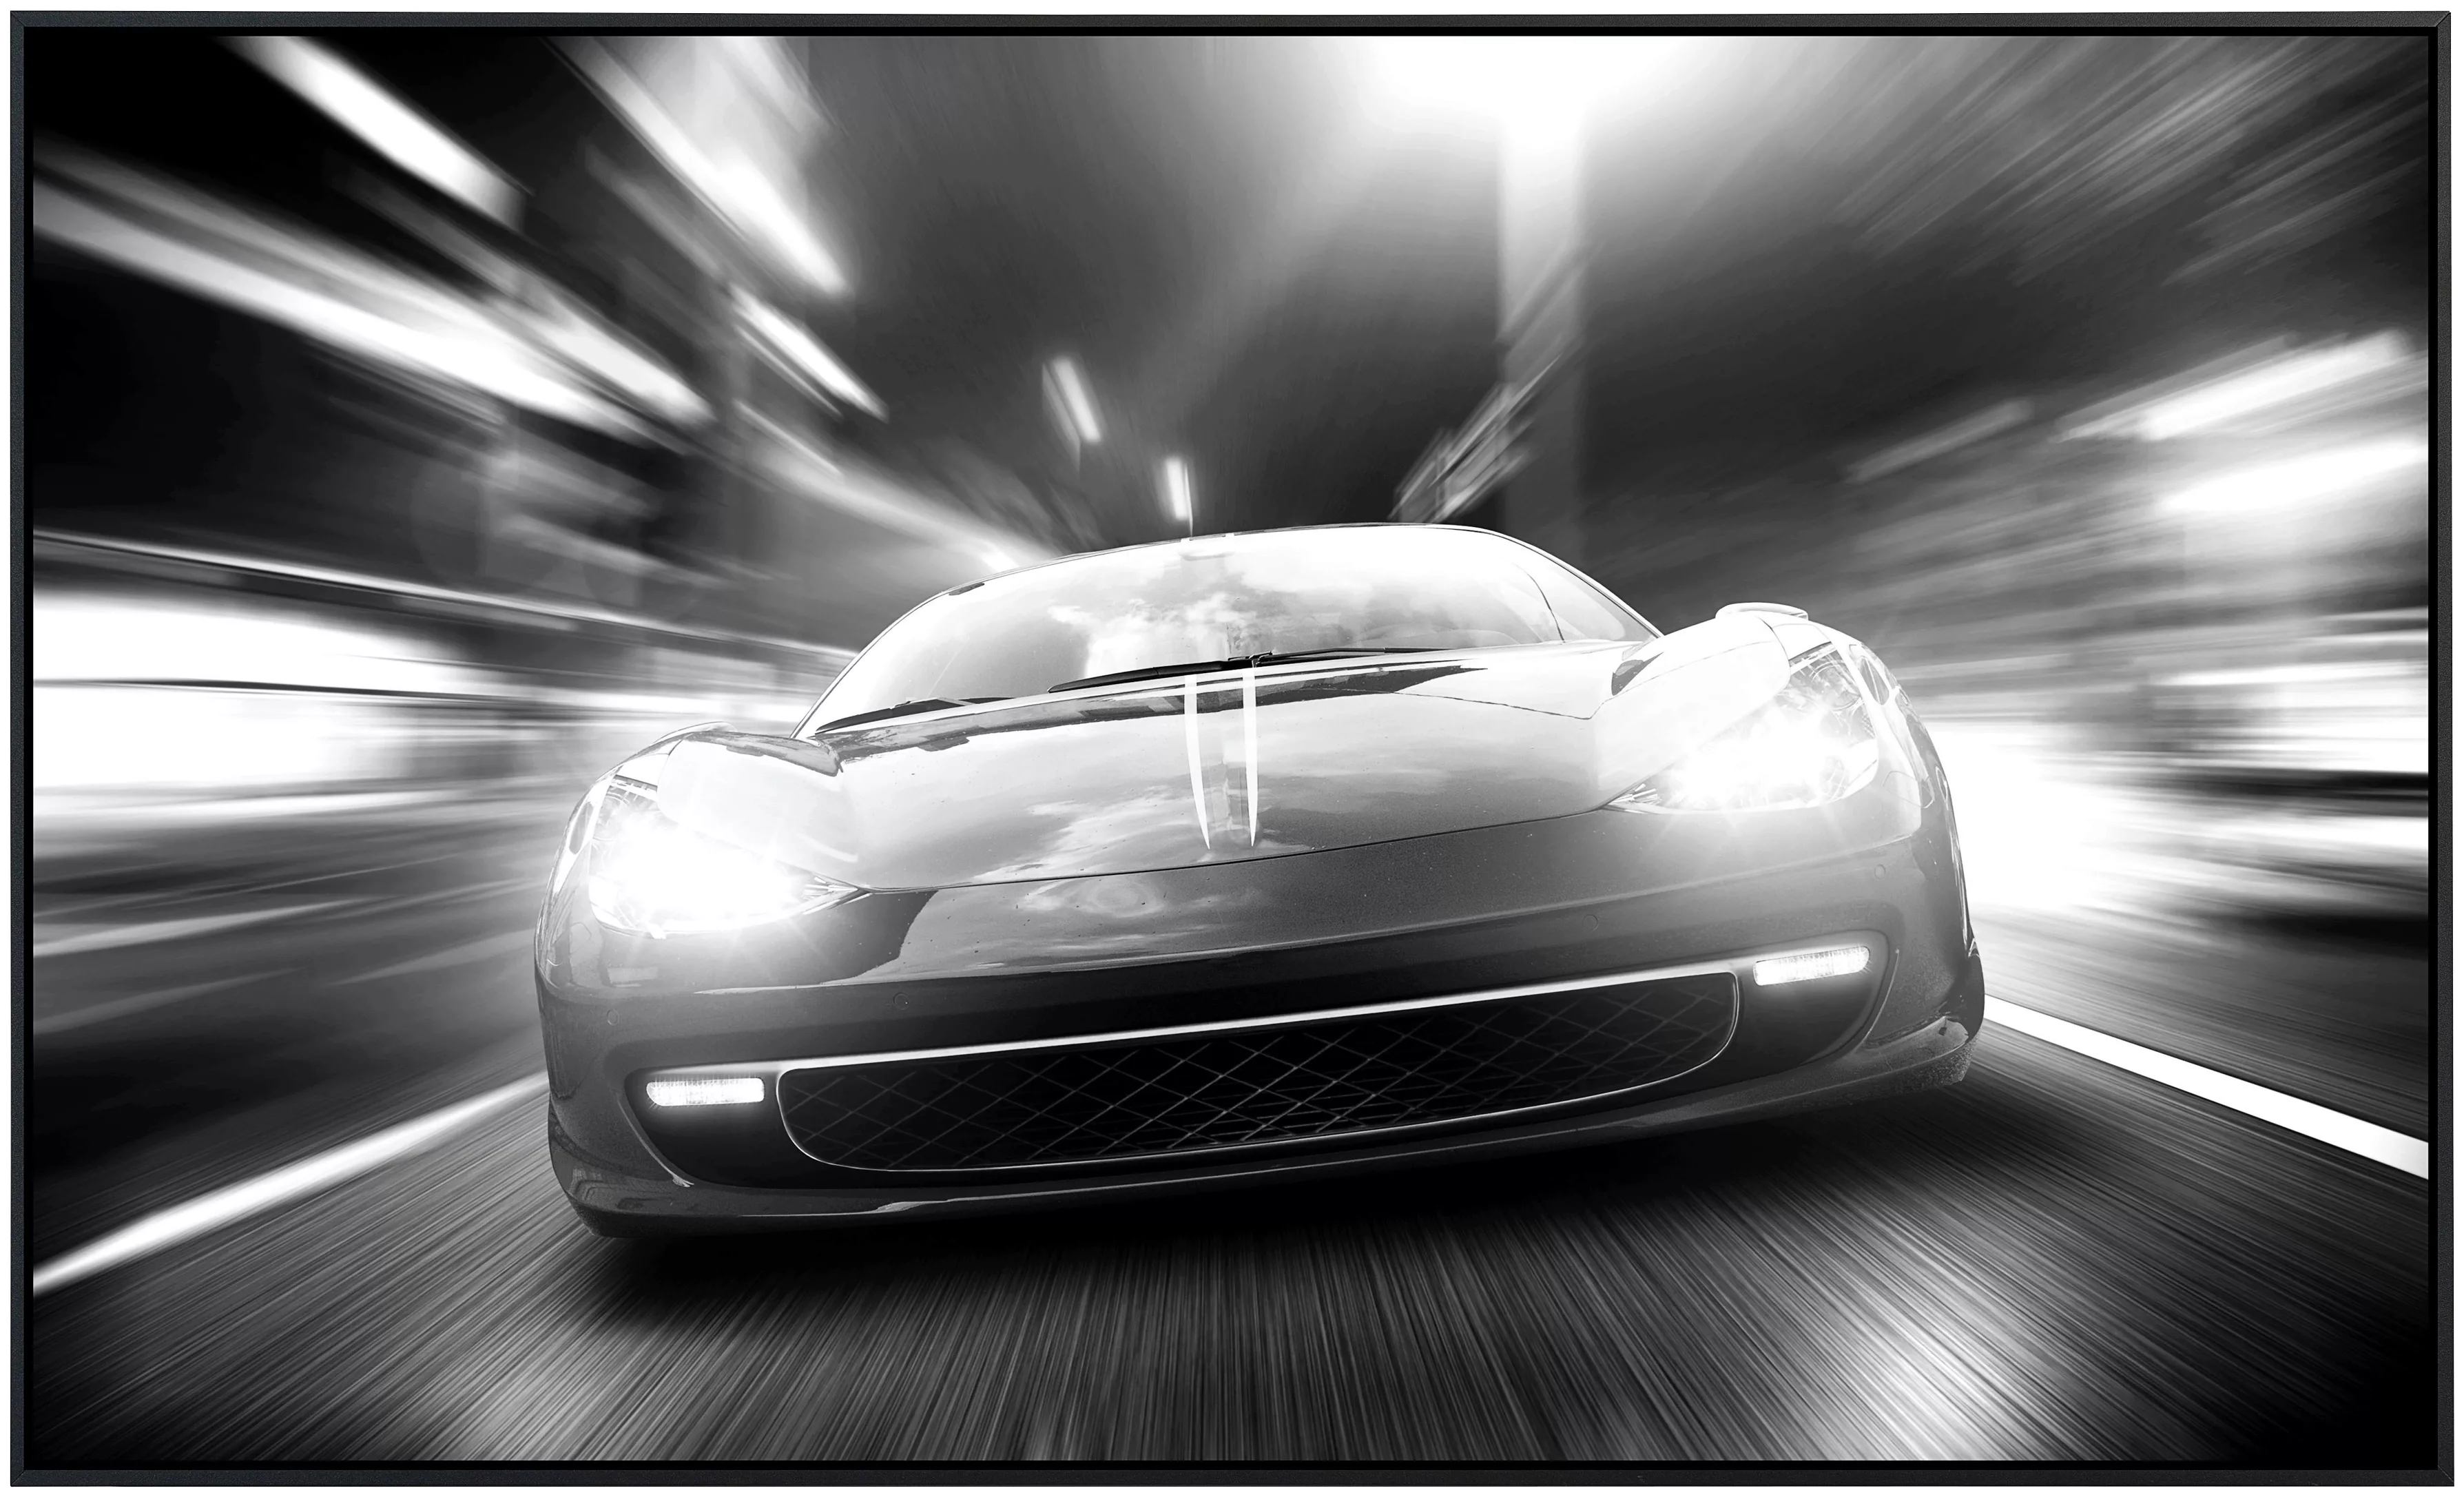 Papermoon Infrarotheizung »Auto Schwarz & Weiß«, sehr angenehme Strahlungsw günstig online kaufen